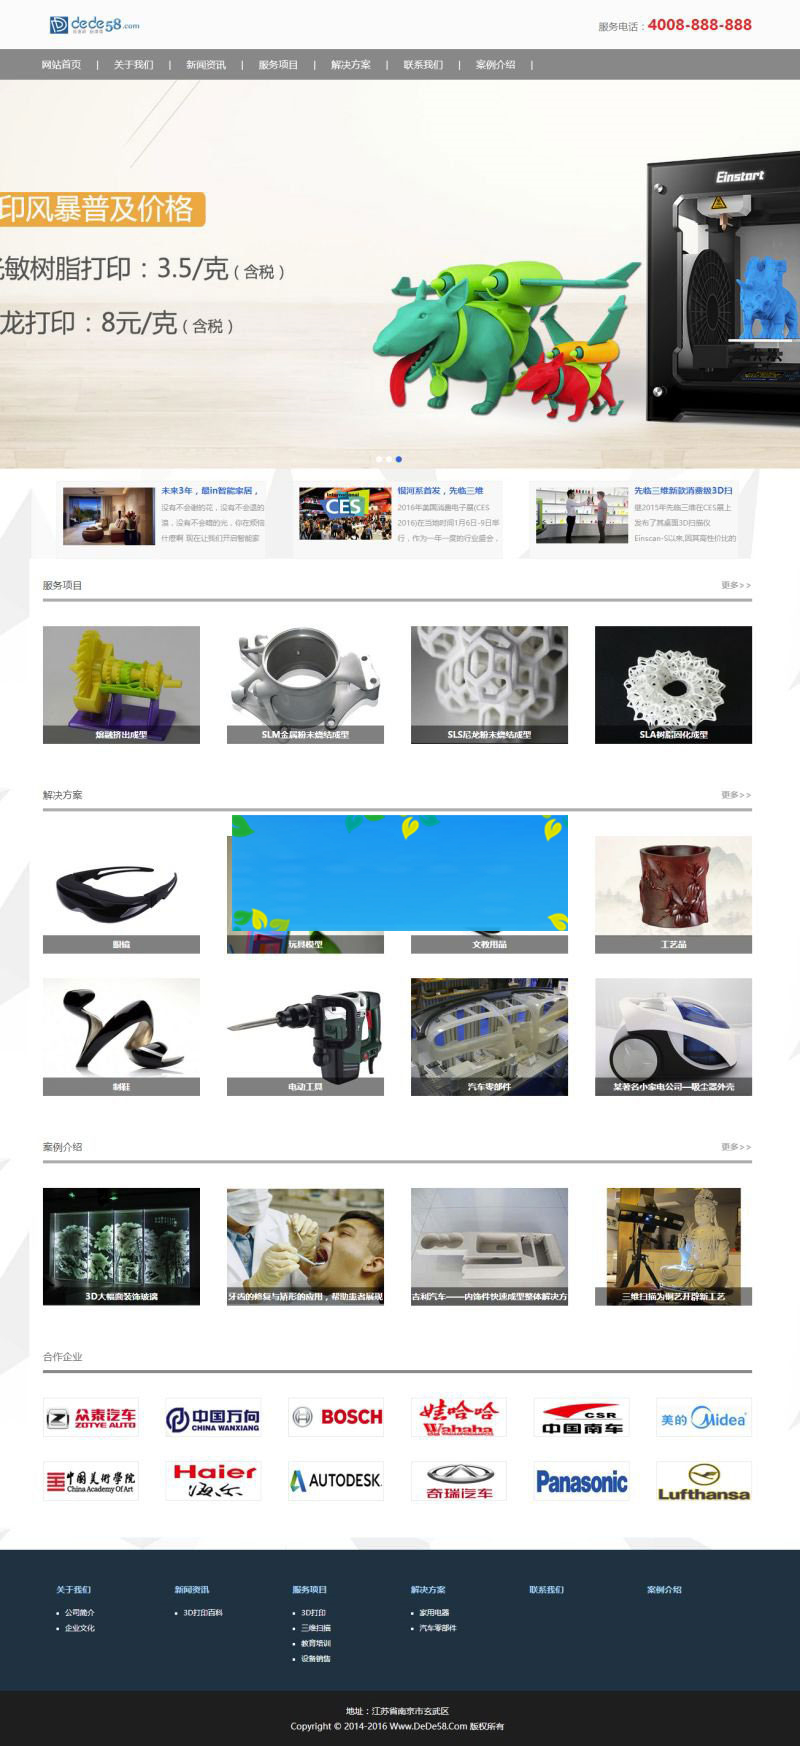 织梦dedecms相应式3D打印设施公司网站模板(自顺应手机移动端)-零度空间